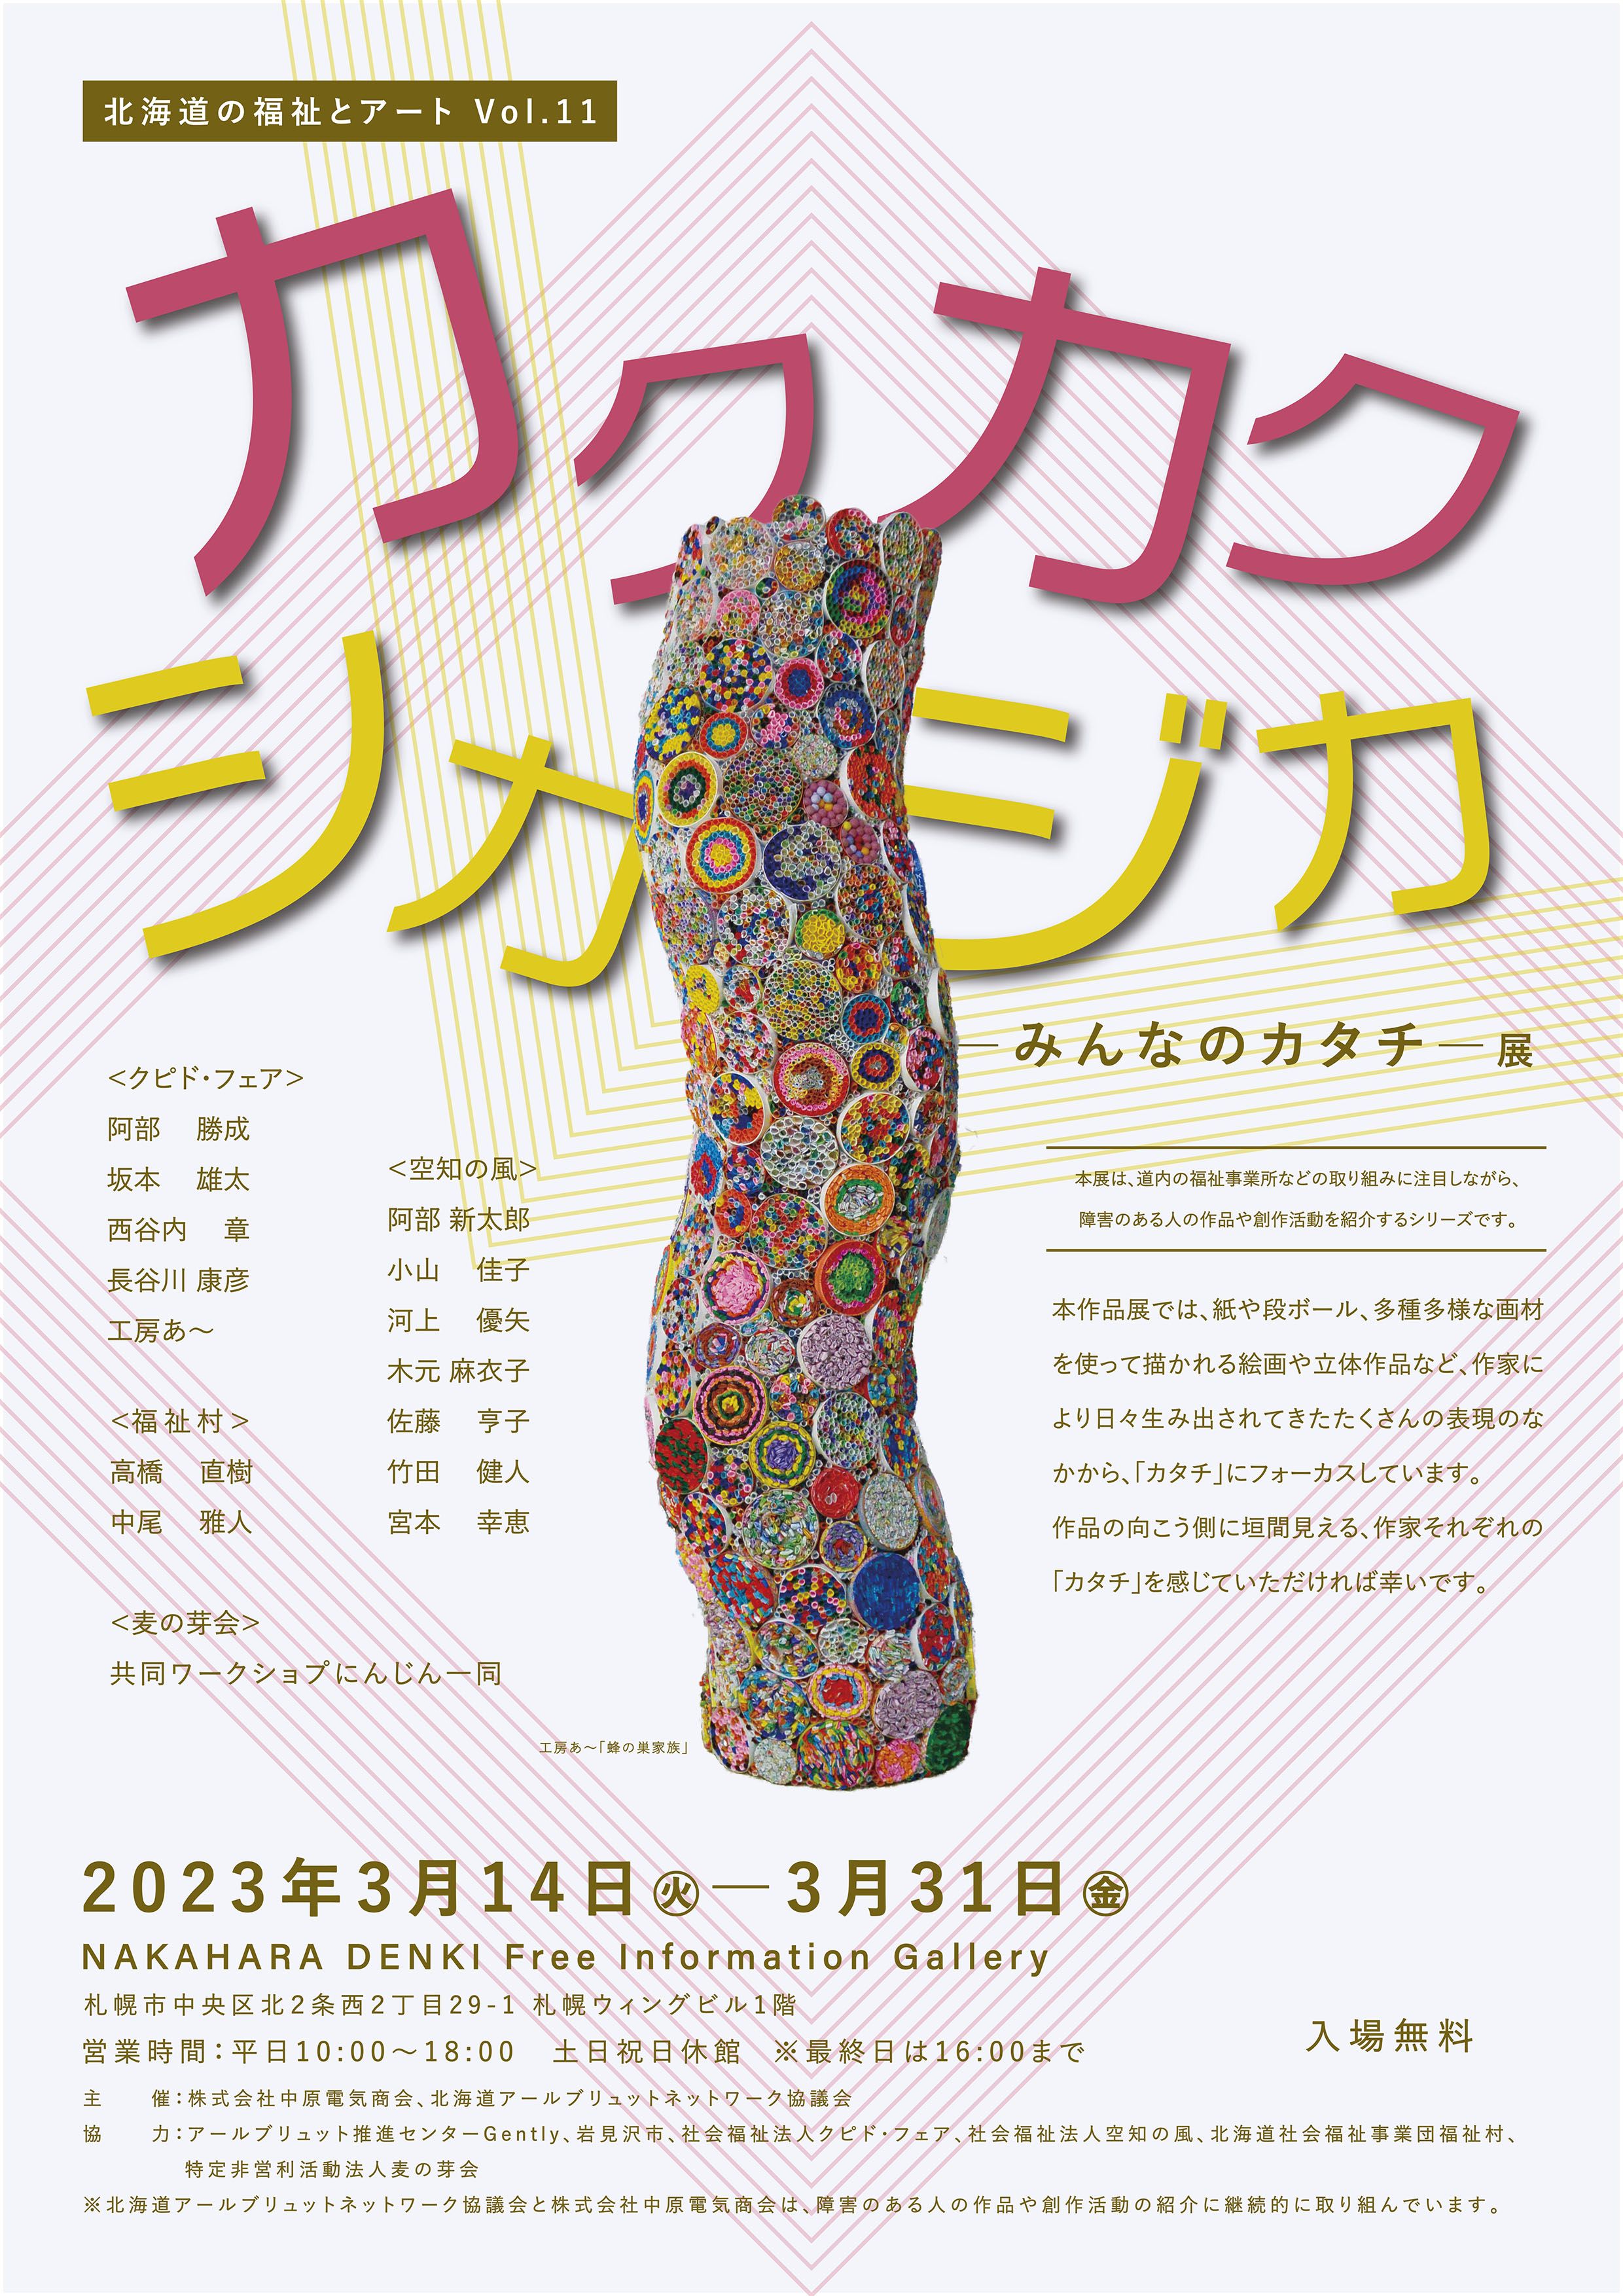 北海道の福祉とアートVol. 11　「カクカクシカジカ ―みんなのカタチ― 展」